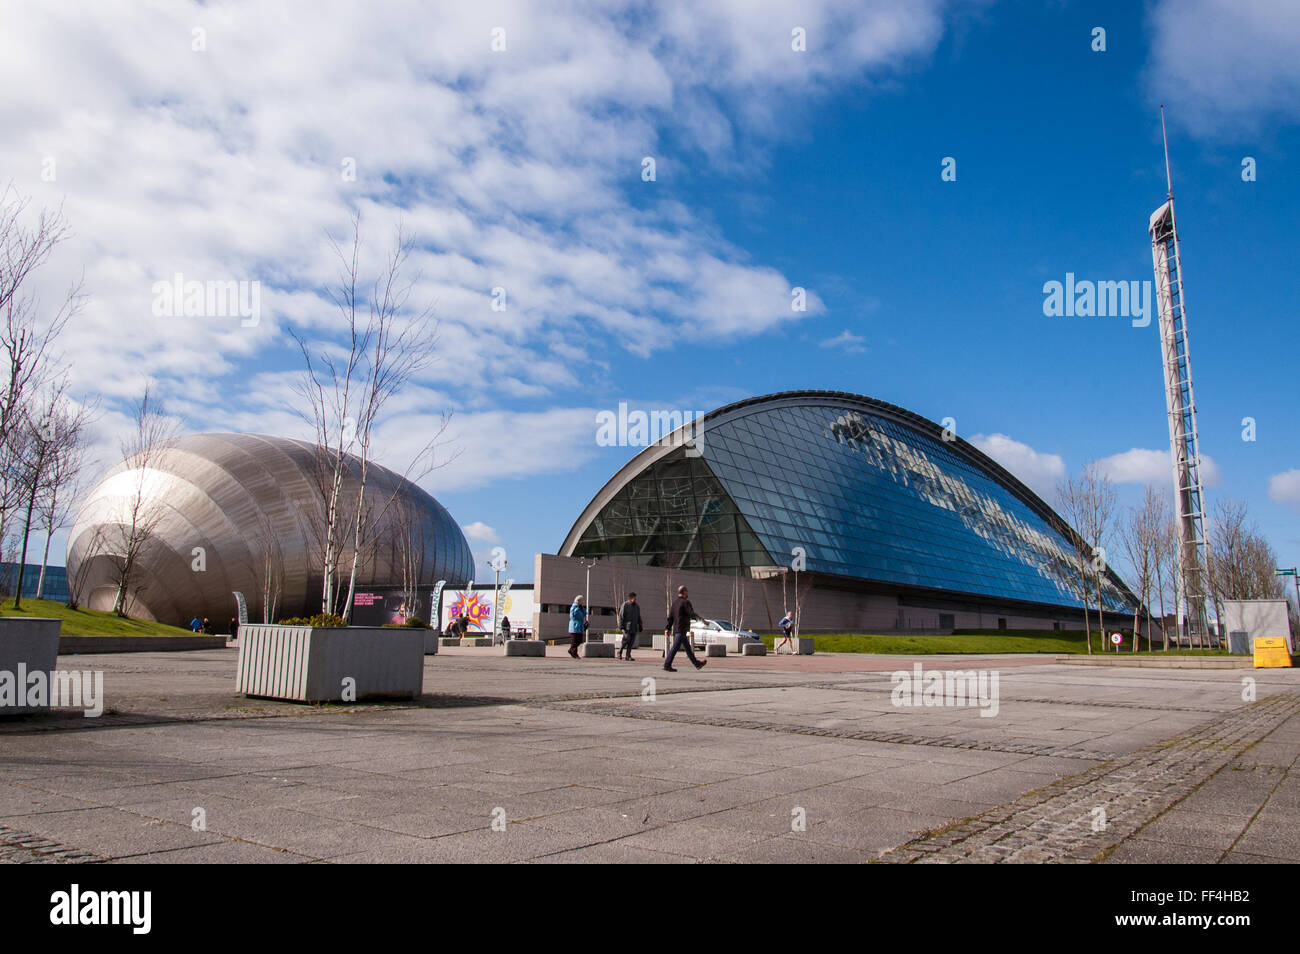 Avis de Glasgow Science Museum et cinéma Imax dans une journée ensoleillée (Écosse, Royaume-Uni) Banque D'Images